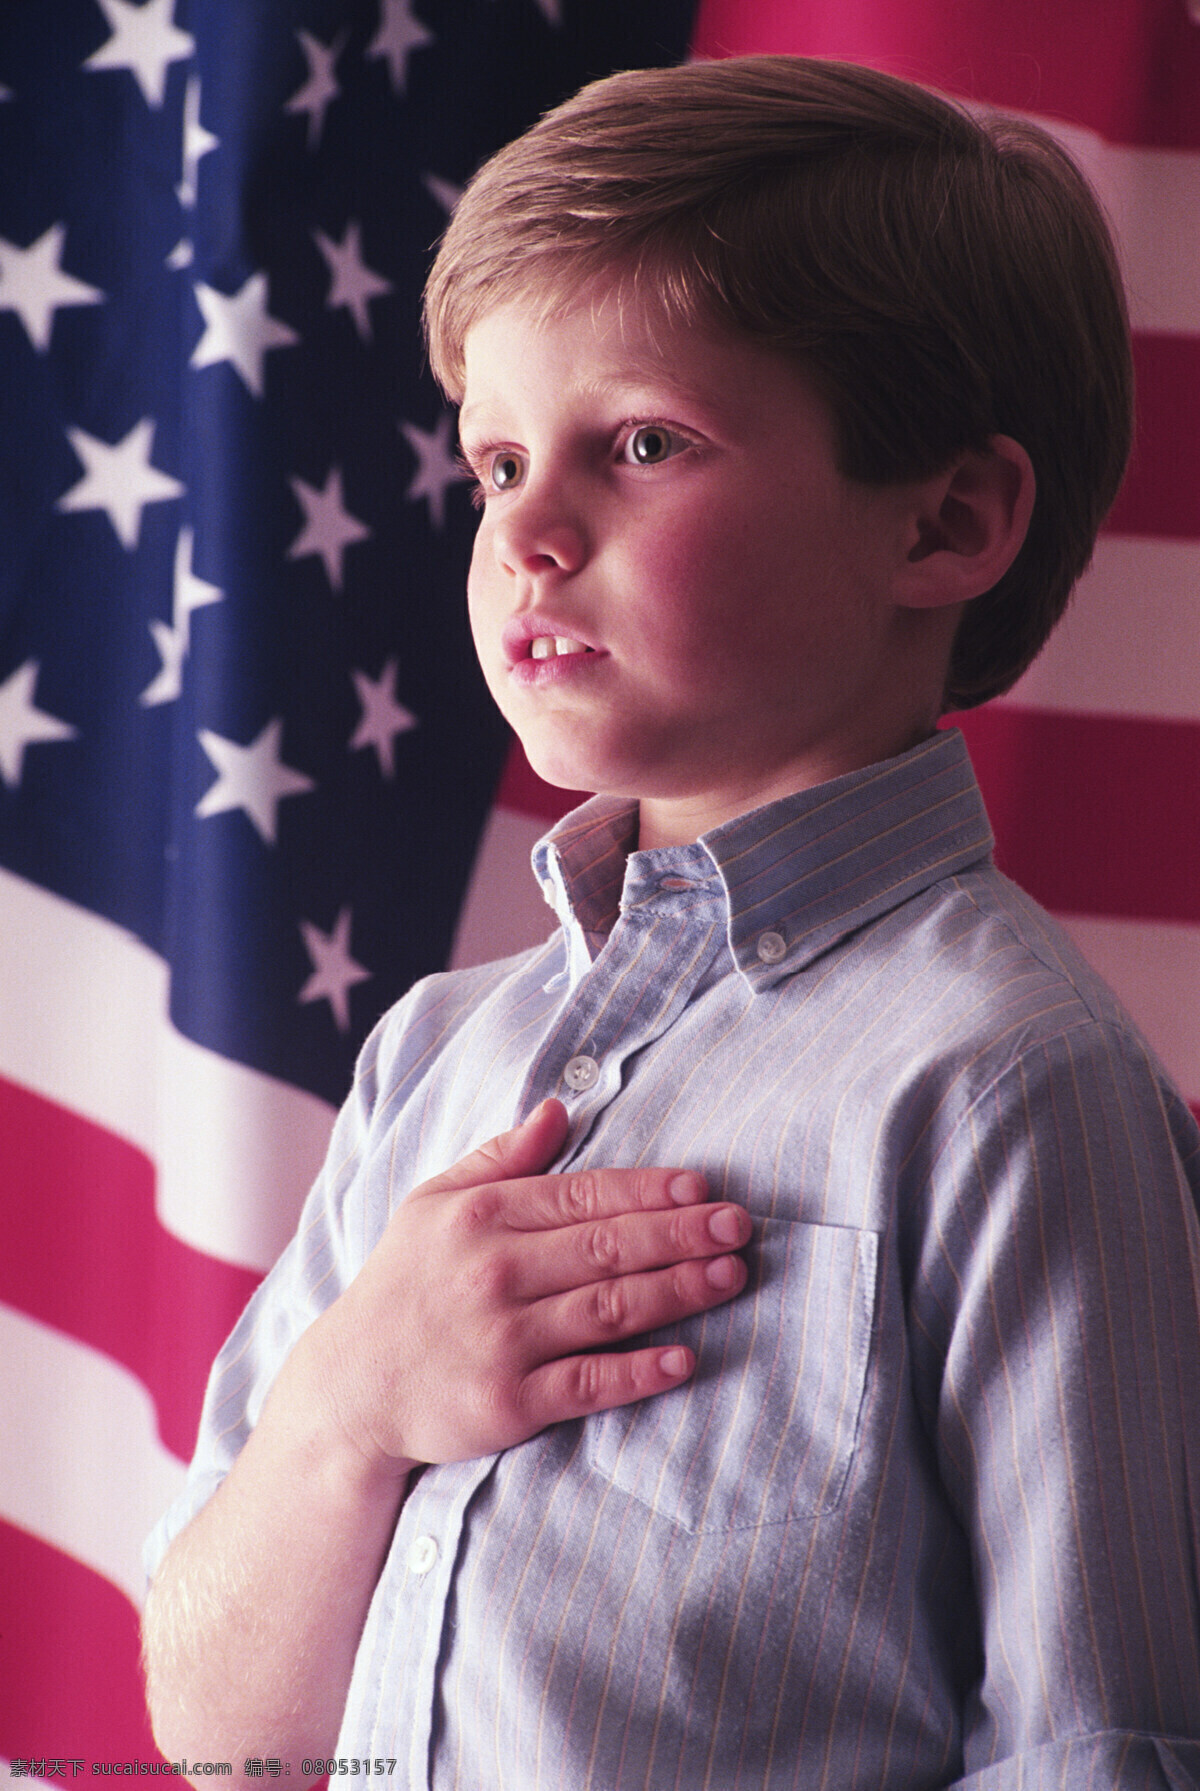 爱国 侧面 儿童幼儿 国旗 美国 男孩 人物图库 设计图库 星旗下的男孩 星旗 发誓 国歌 小洋人 外国 psd源文件